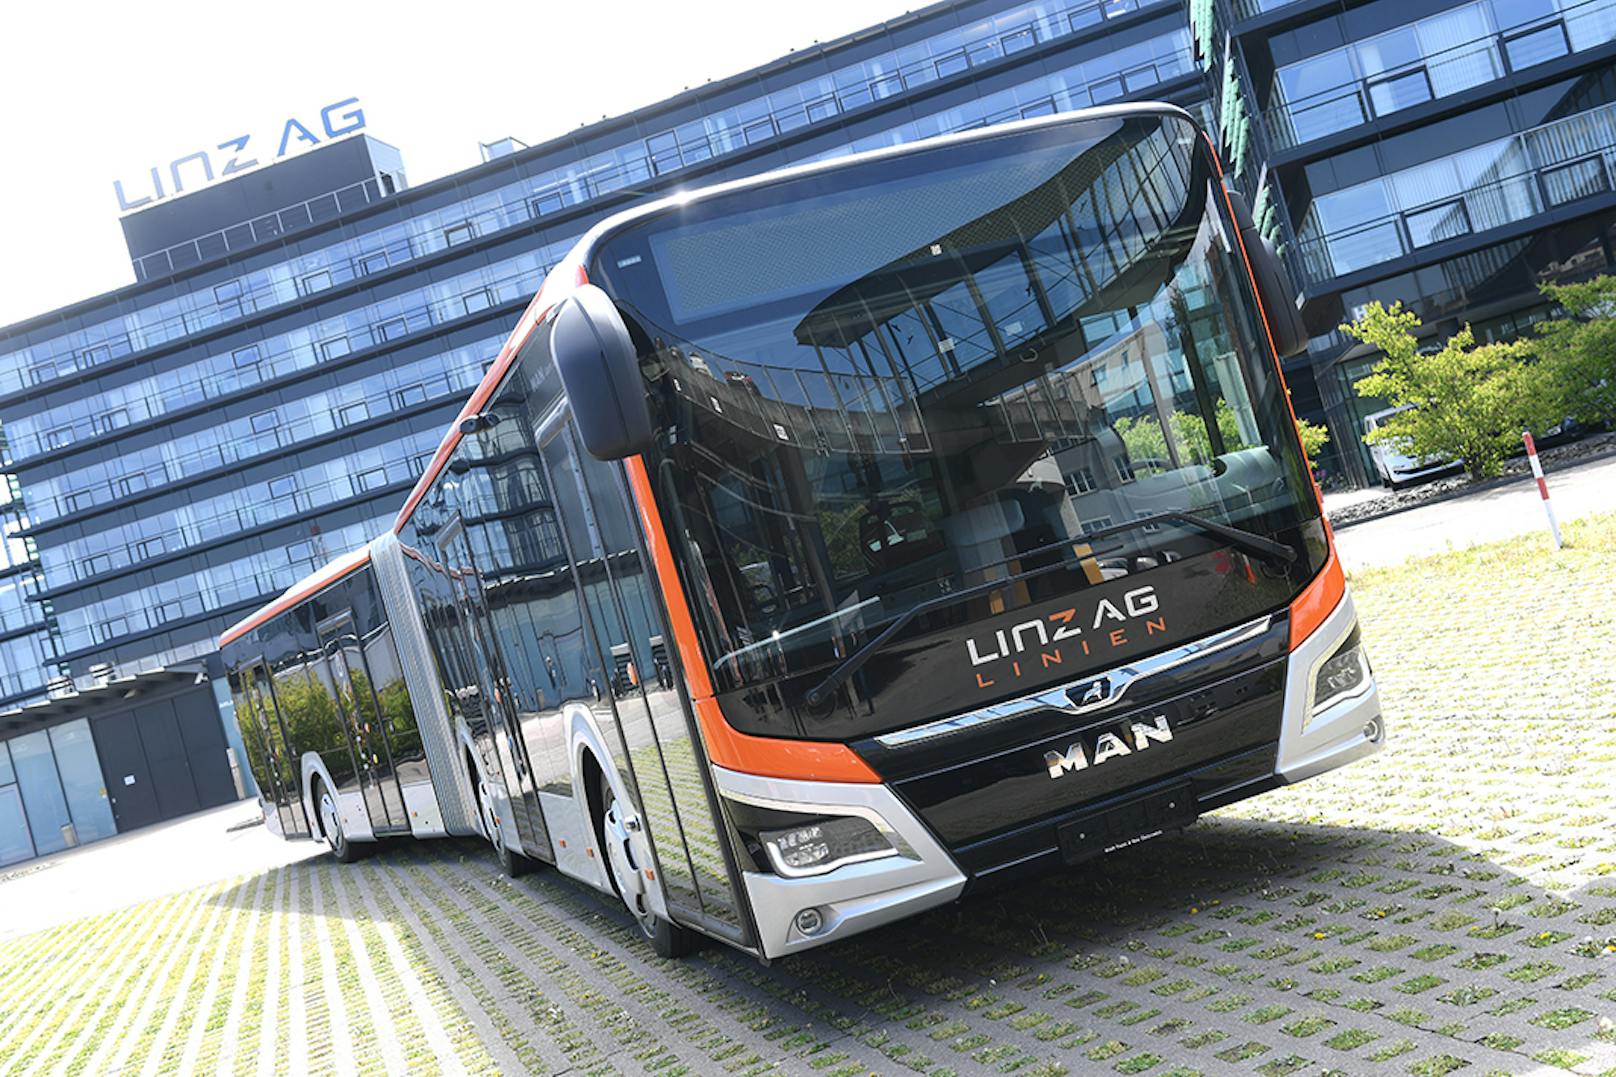 Bus, Bim und Bahn – das 1-2-3-Ticket für ganz Östereich sorgt schon jetzt in Linz für Diskussionen.